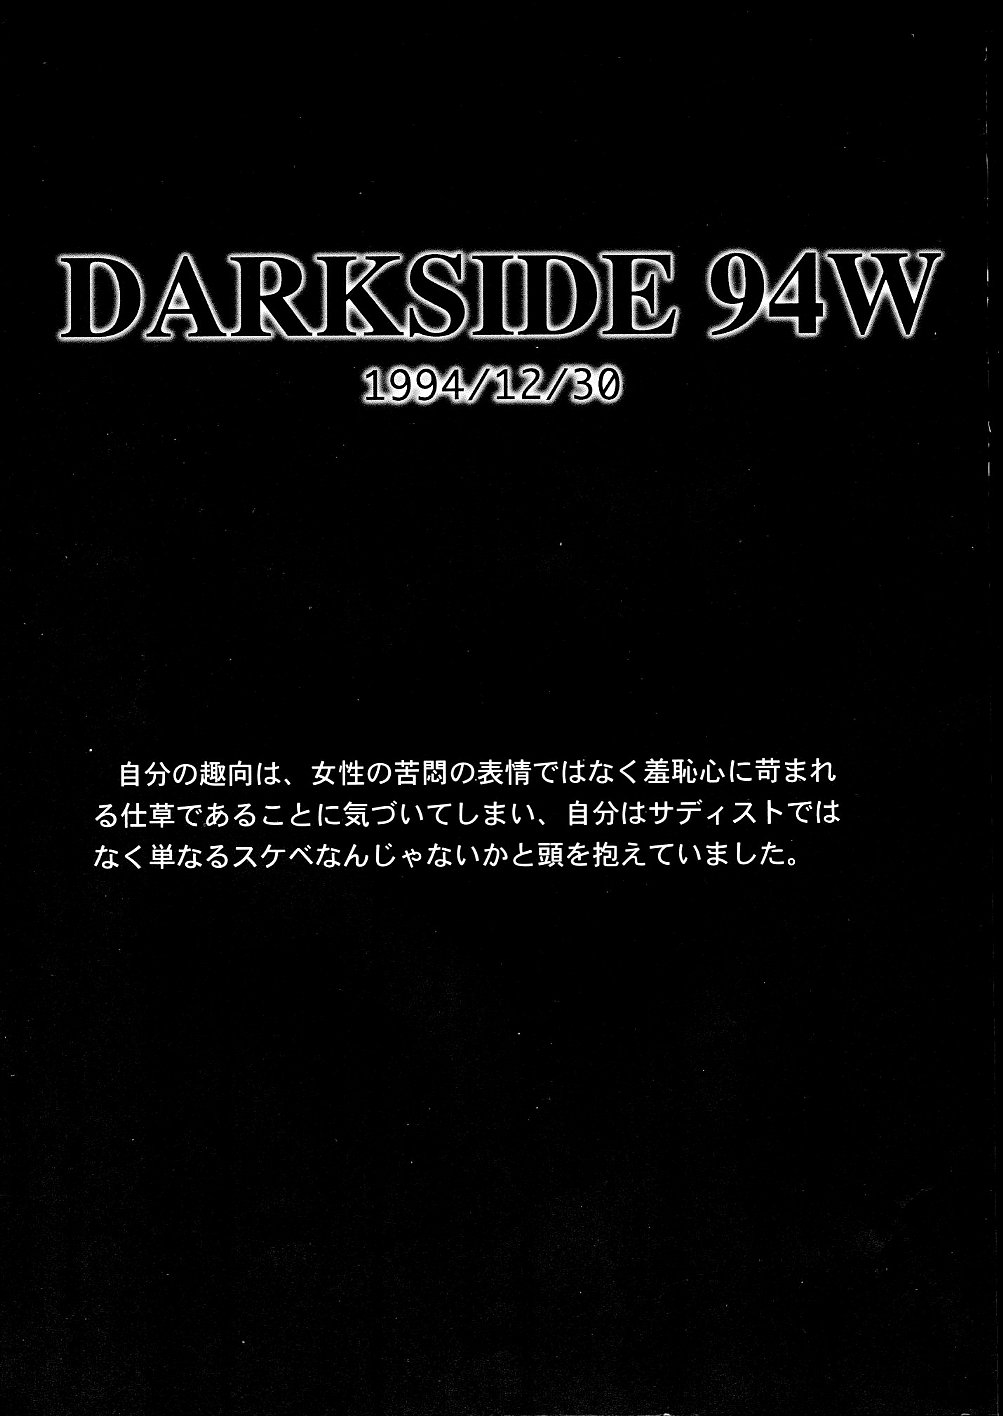 [Studio Vanguard (Twilight)] Darkside Special 3 